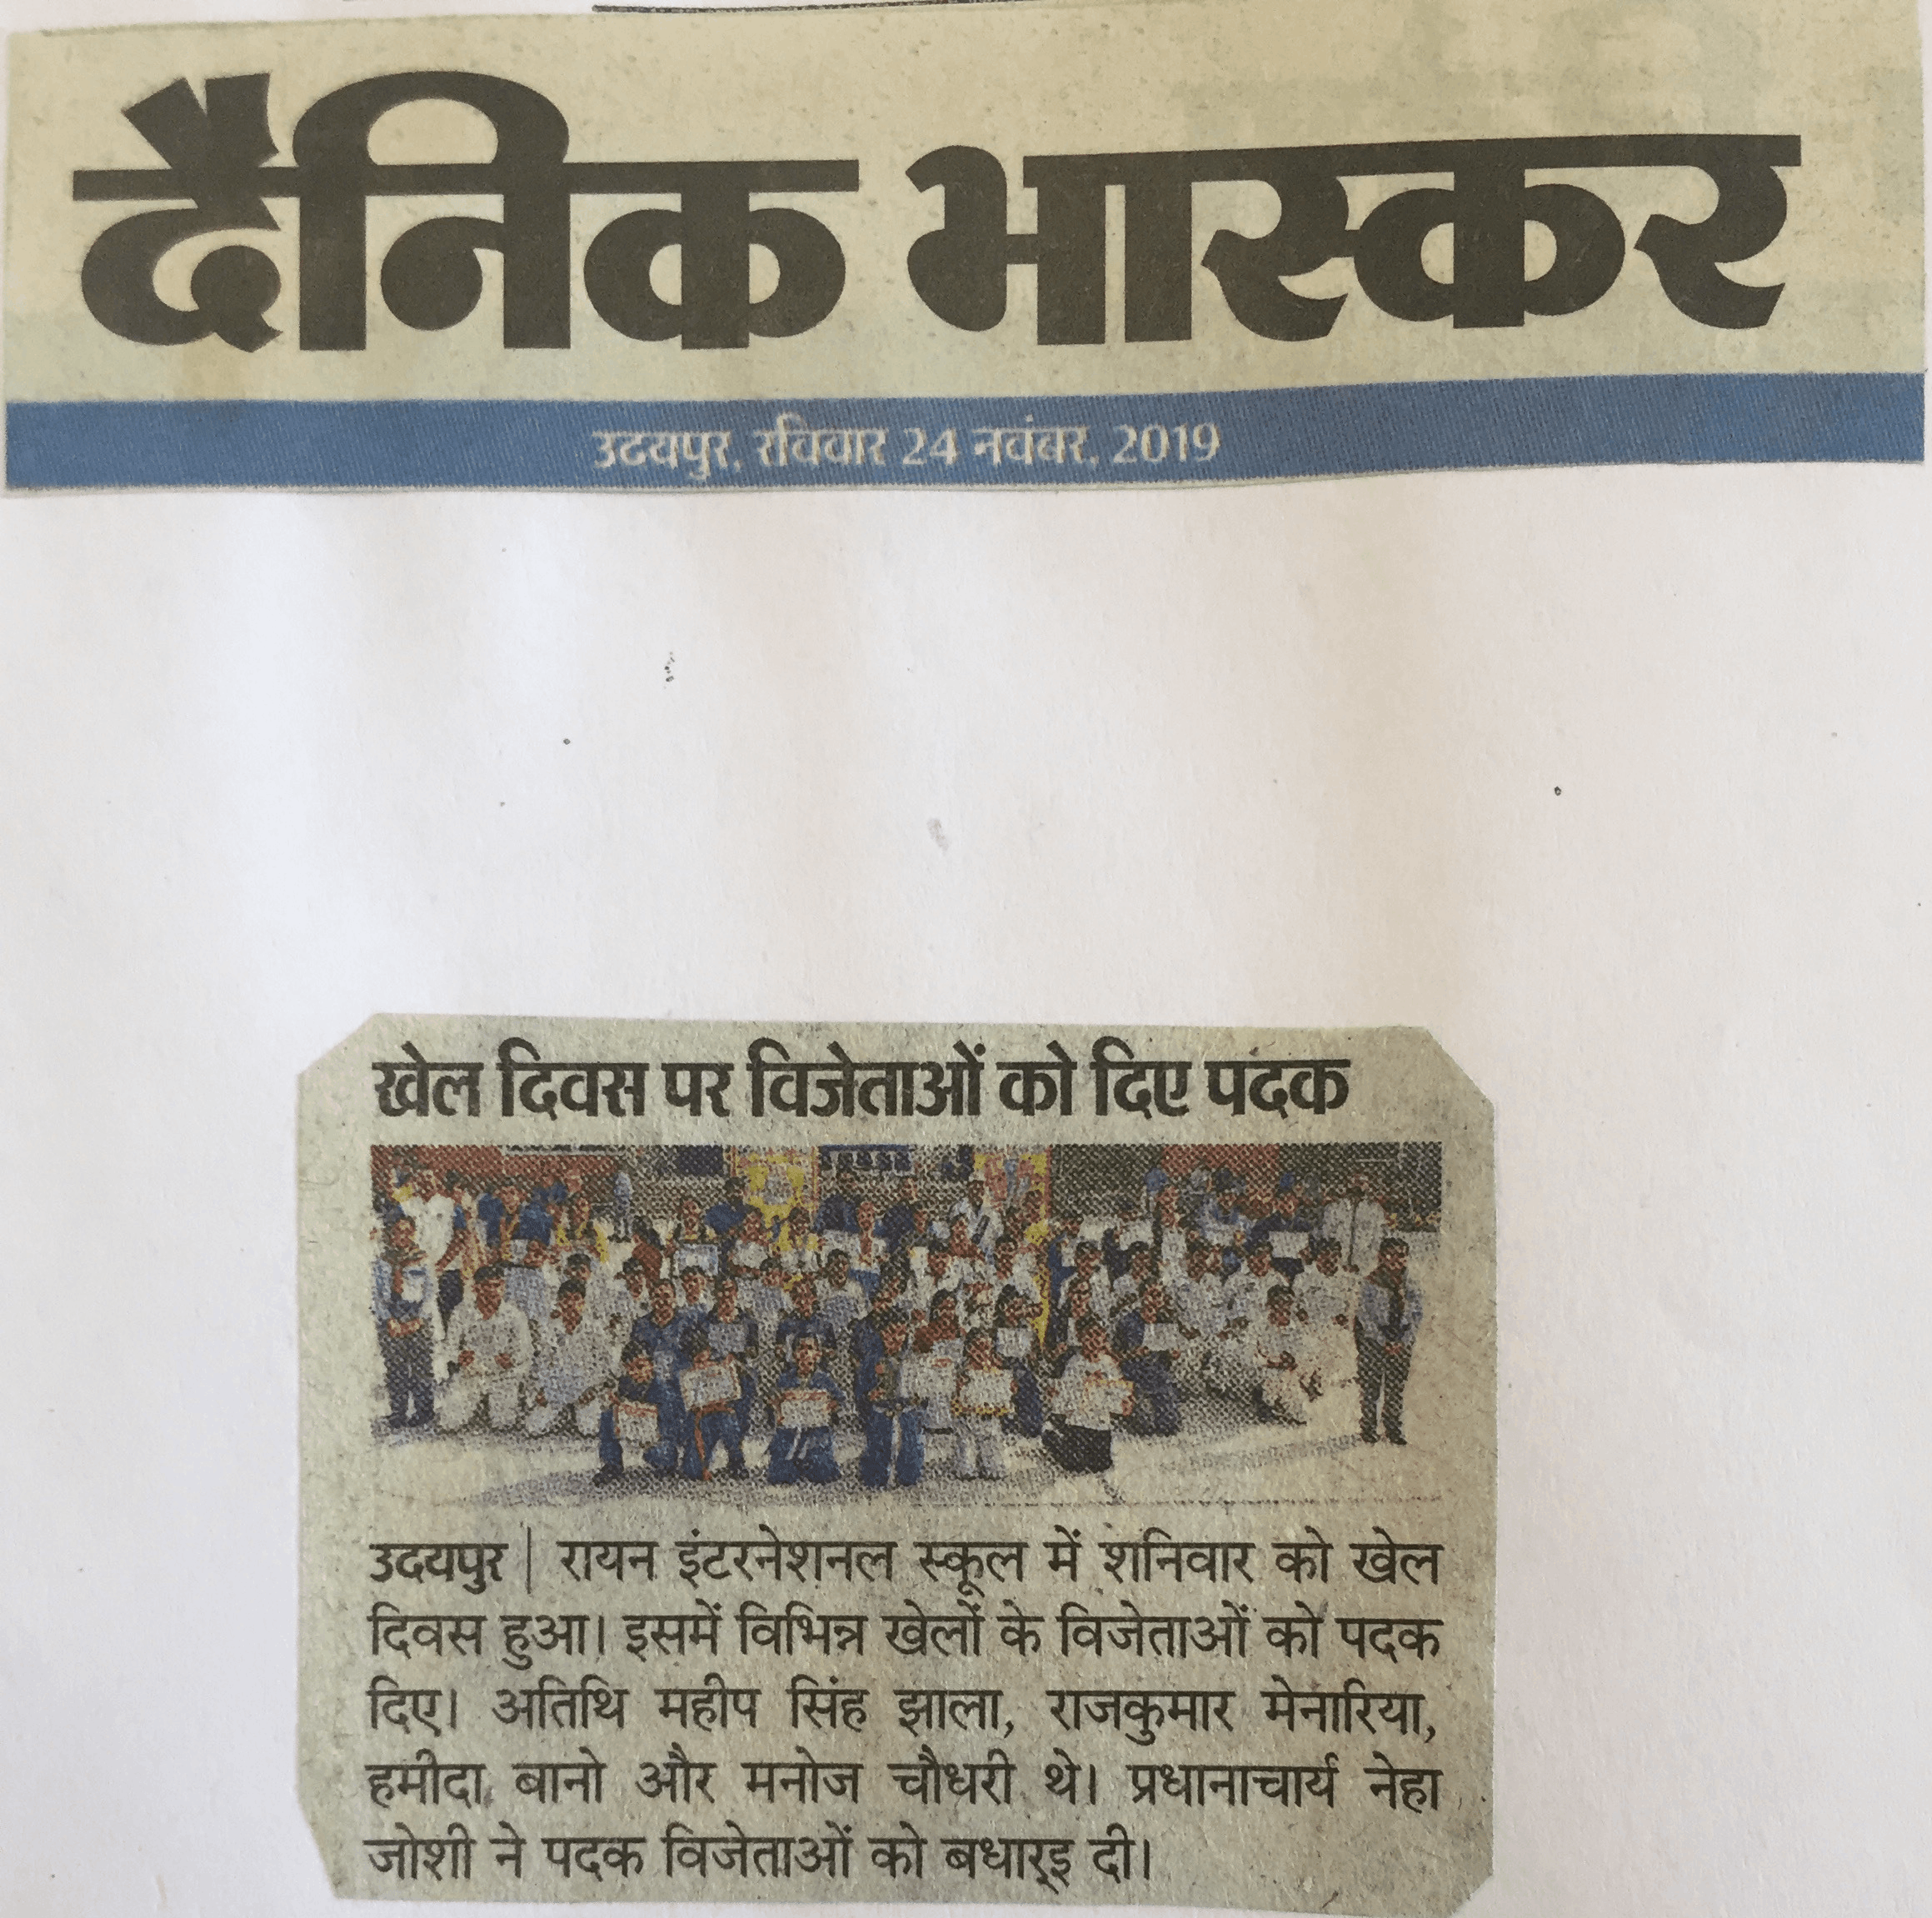 ANNUAL SPORTS DAY CELEBRATION - Ryan international School, Udaipur